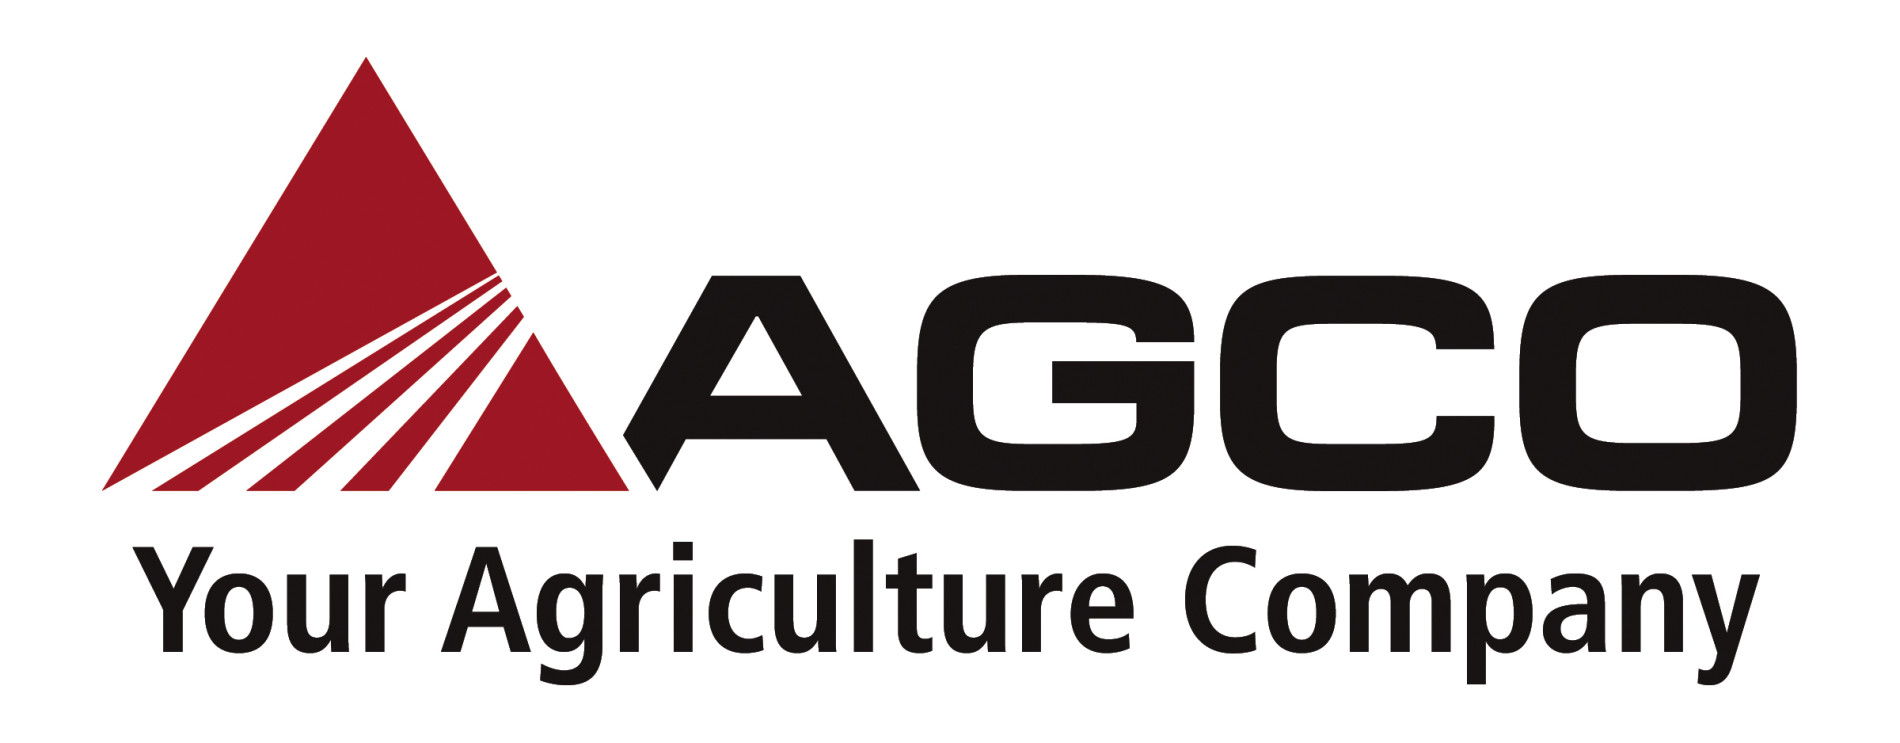 Логотип AGCO